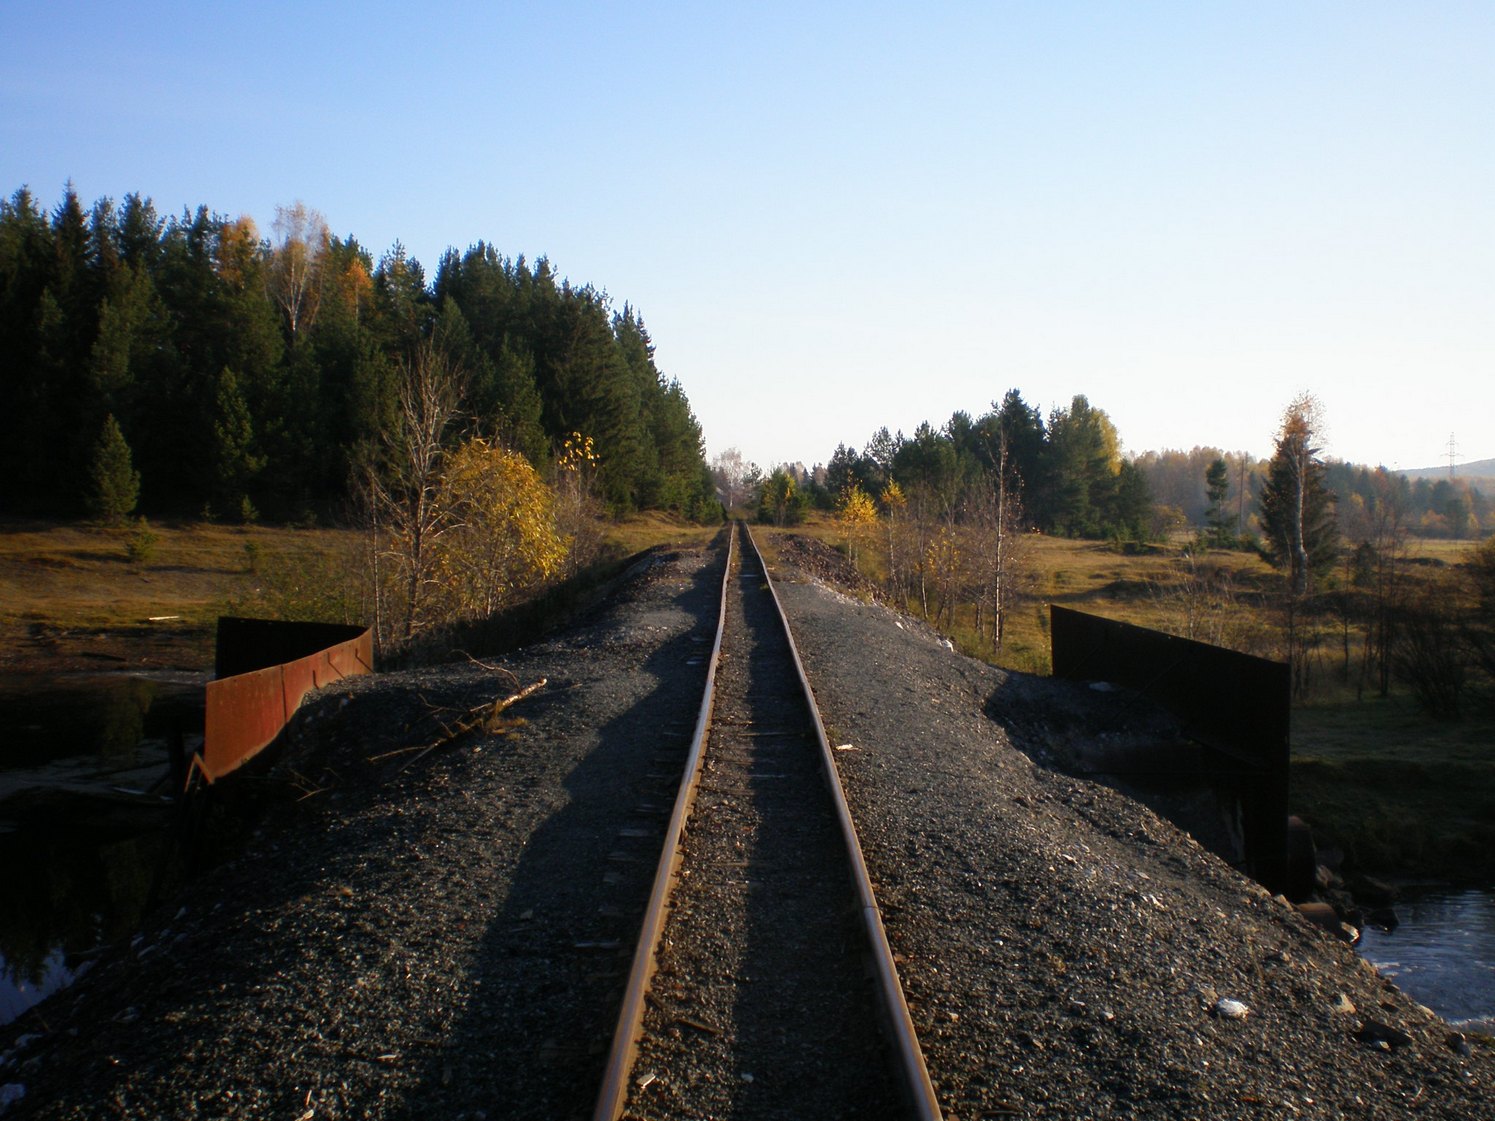 Висимо-Уткинская узкоколейная железная дорога  — фотографии, сделанные в 2007 году (часть 19)